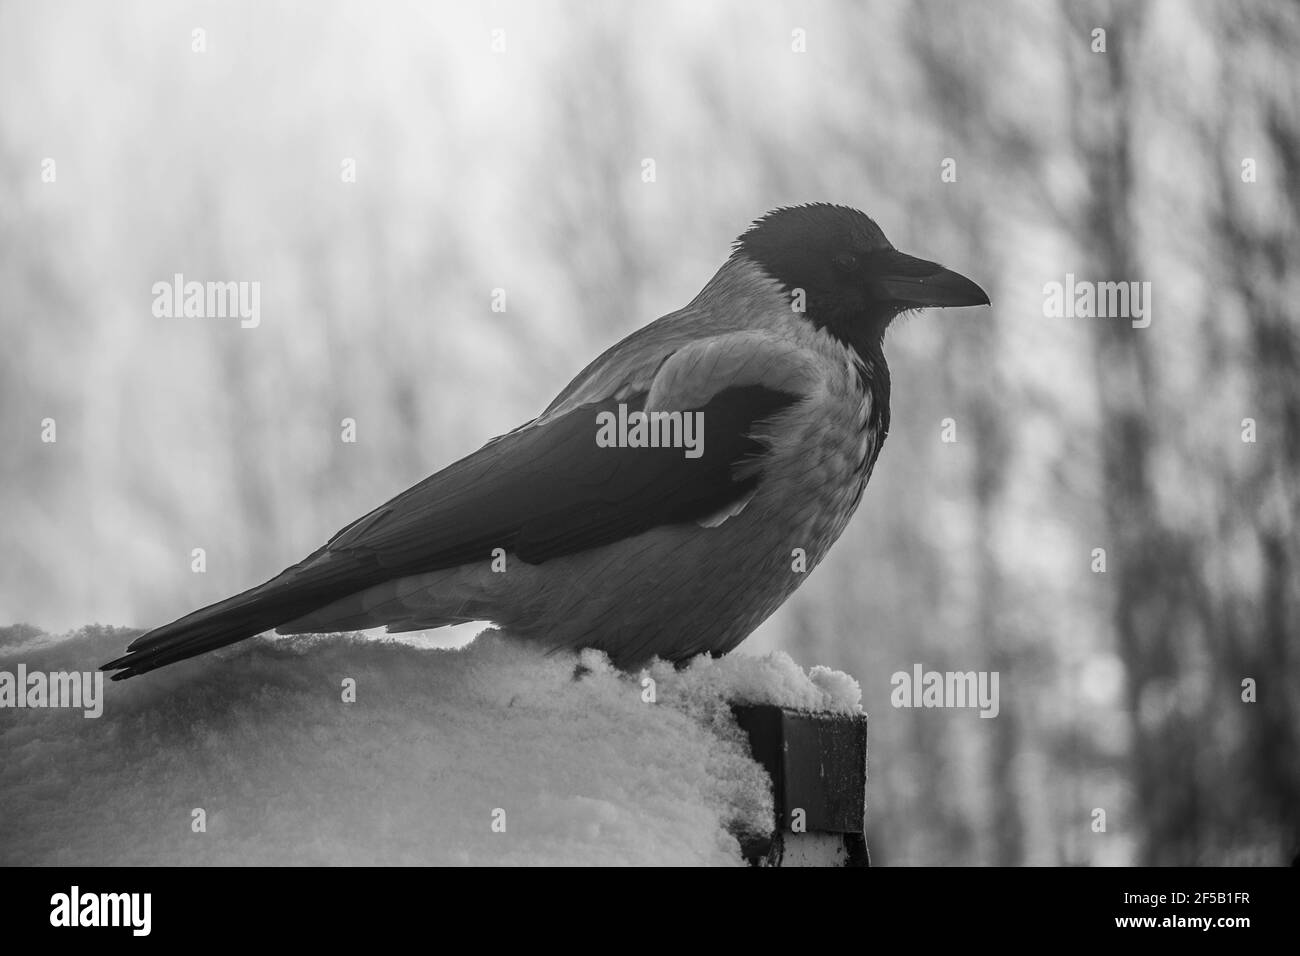 Grau und schwarz Kapuzenkrähen Vogel sitzt auf einem Eisen Draht auf grün  verschwommenem Hintergrund - Krähe Nahaufnahme Stockfotografie - Alamy